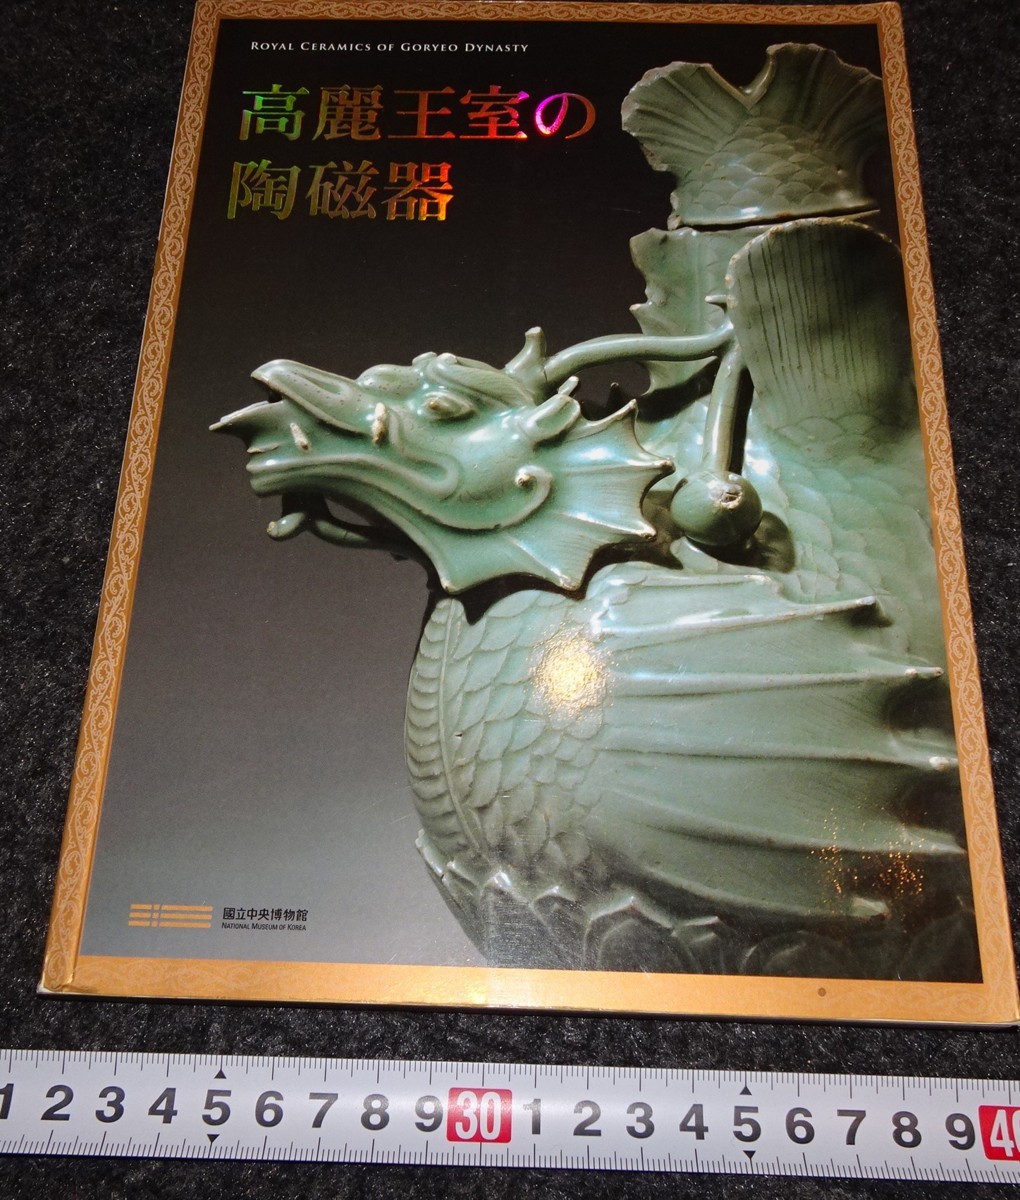 リアル rarebookkyoto s789 朝鮮 高麗皇室の陶磁器 青磁 2009年 李朝